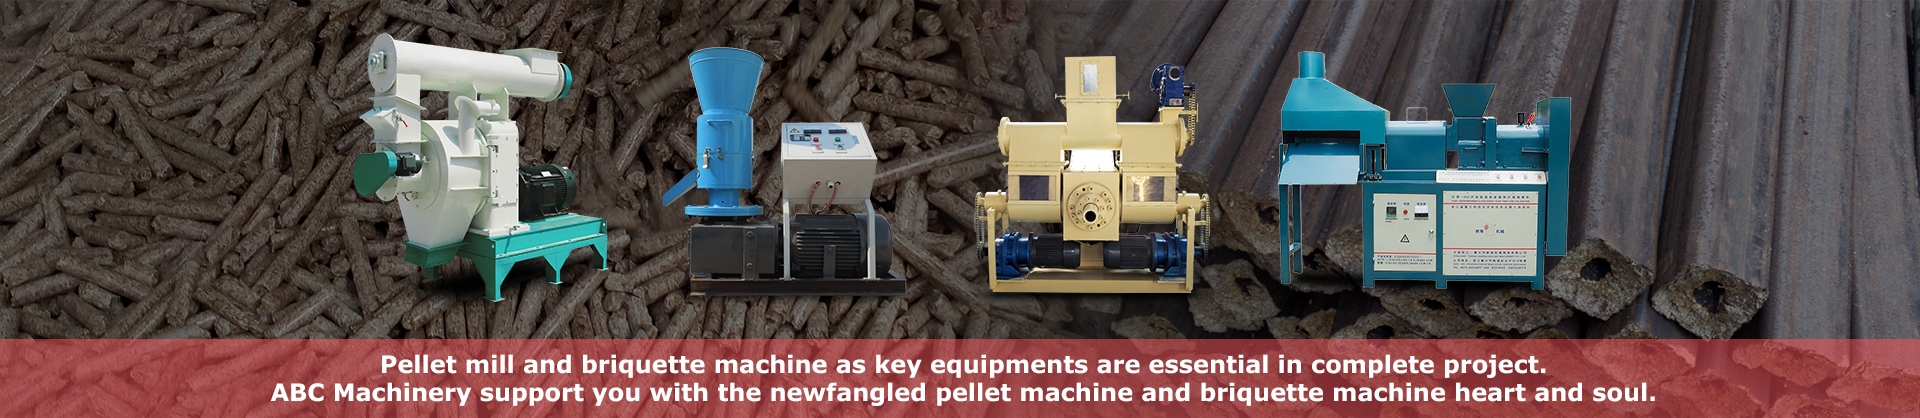 pellet mill and briquette machine